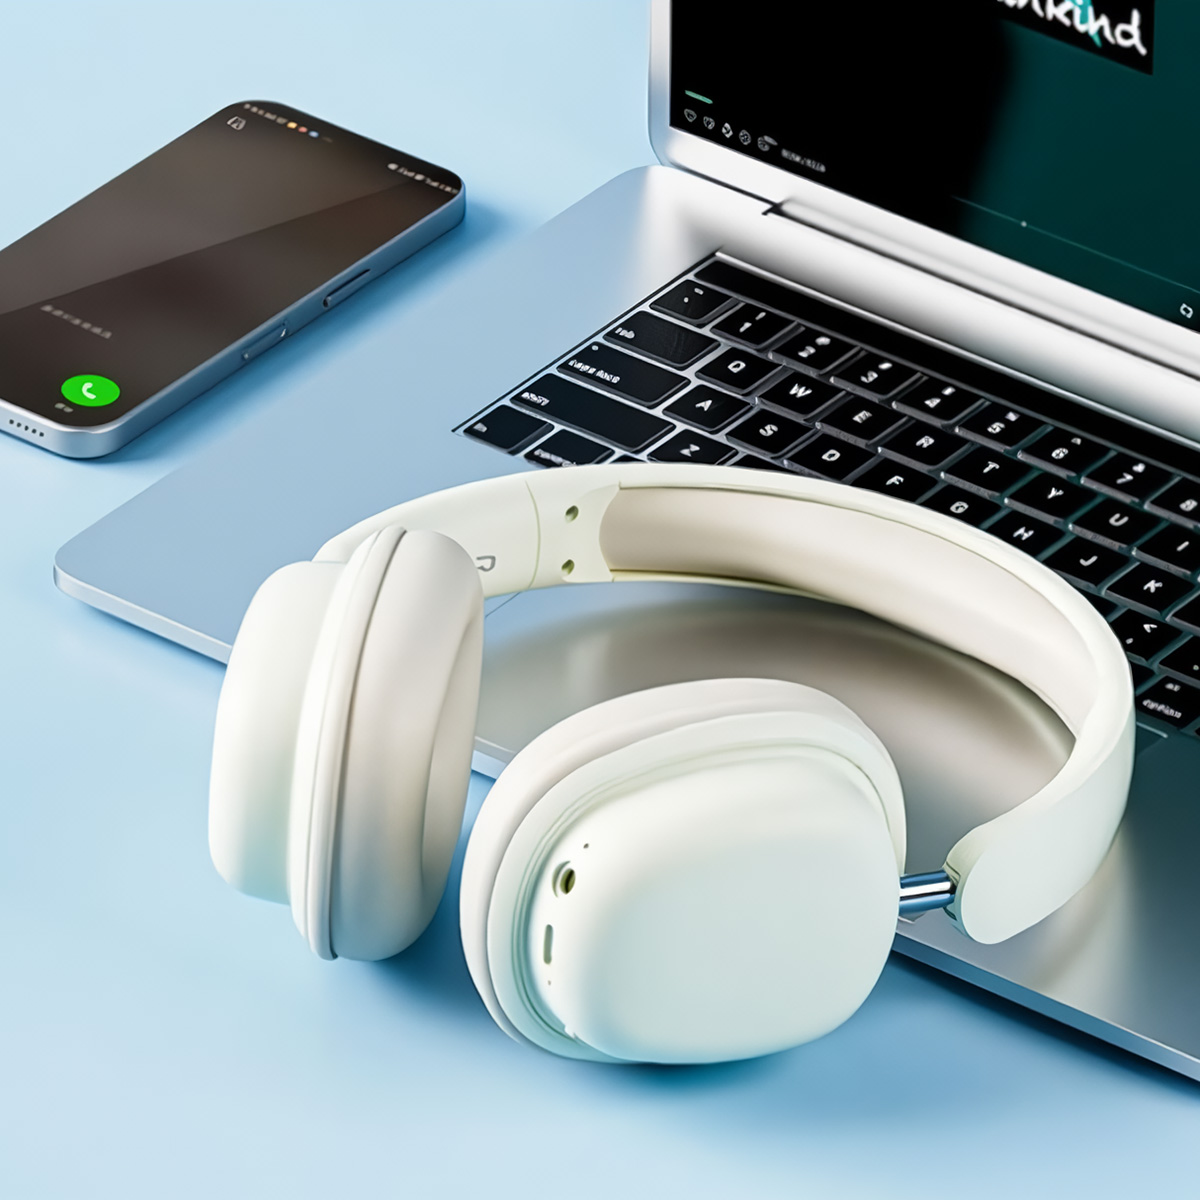 Auscultadores Bluetooth Klack Inalámbricos Sy-t1 Dobrável Com Microfone Amovível E Bateria Com Autonomia De 20h - Azul